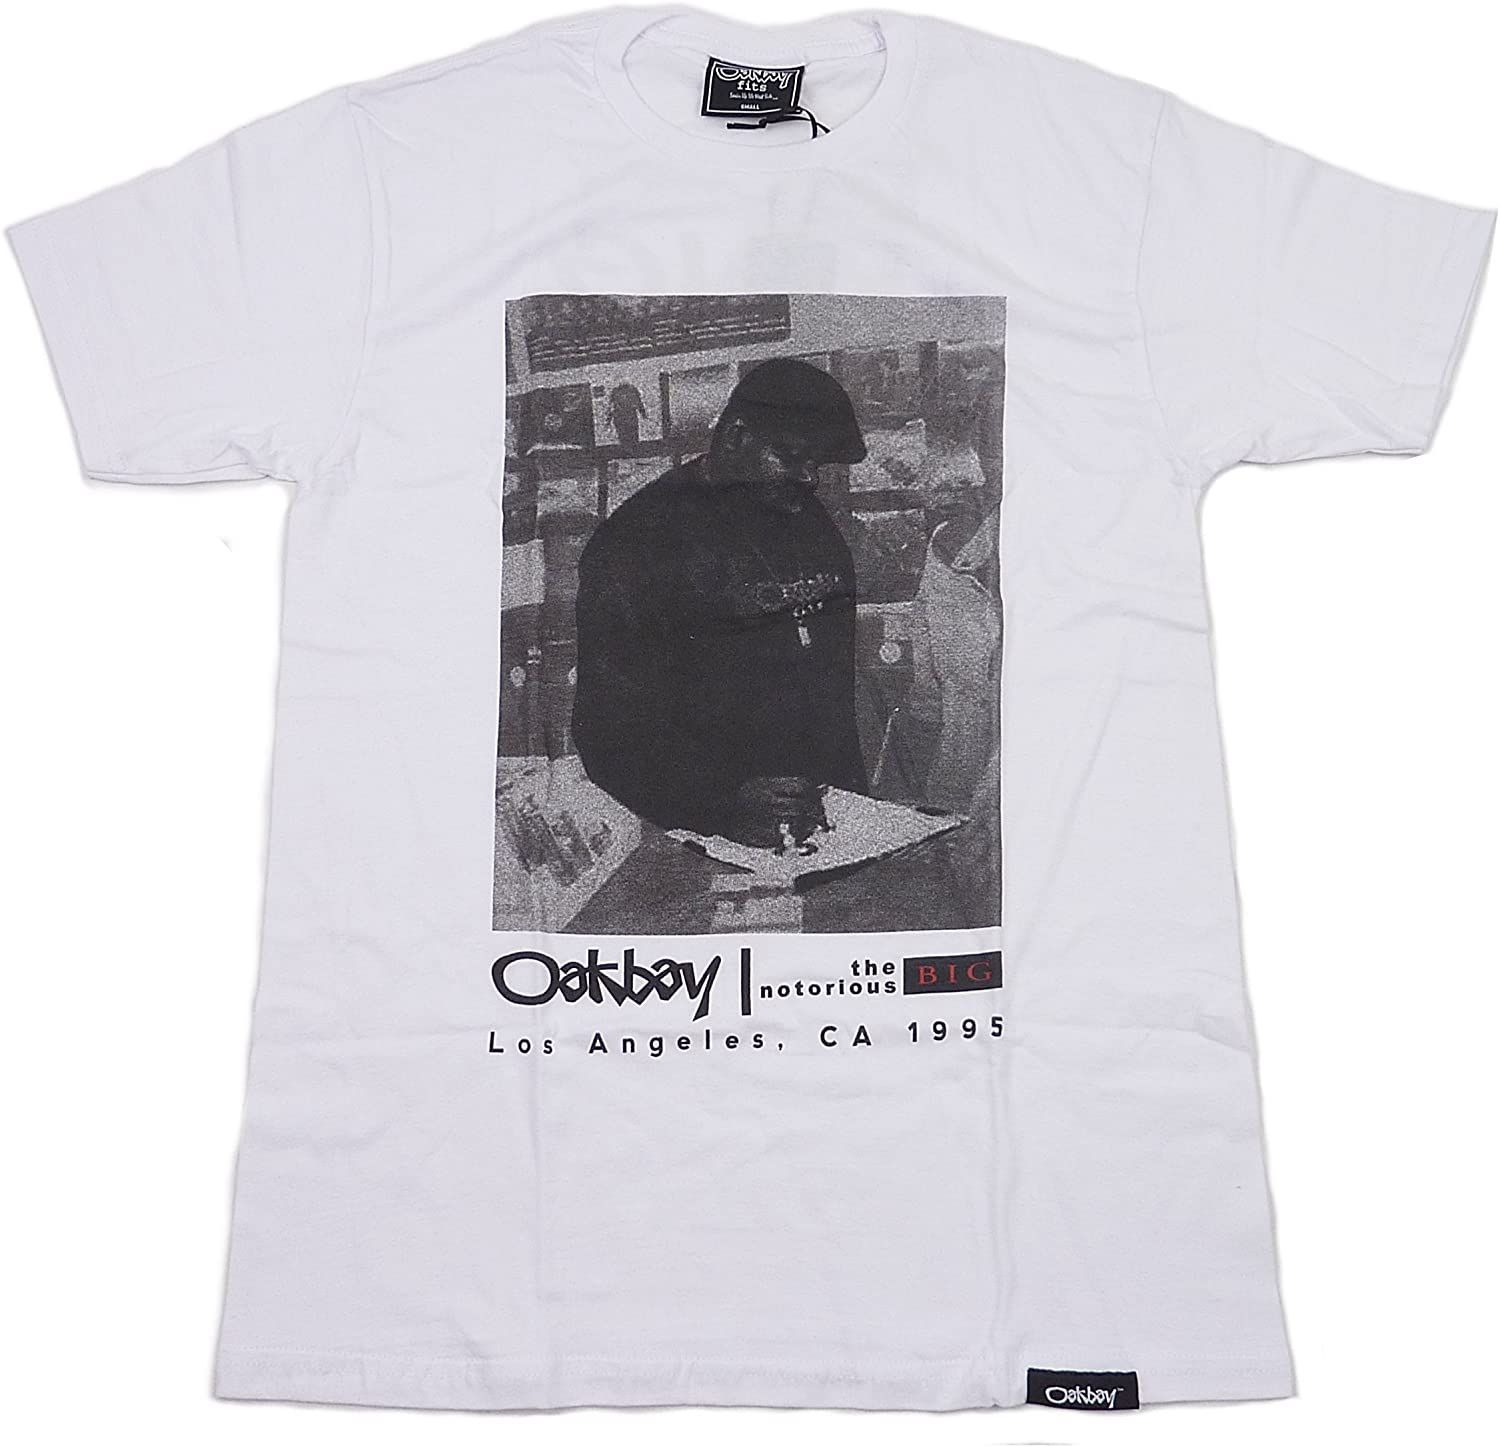 Oakbay Fits オークベイ BIG X OAKBAY 半袖 Tシャツ